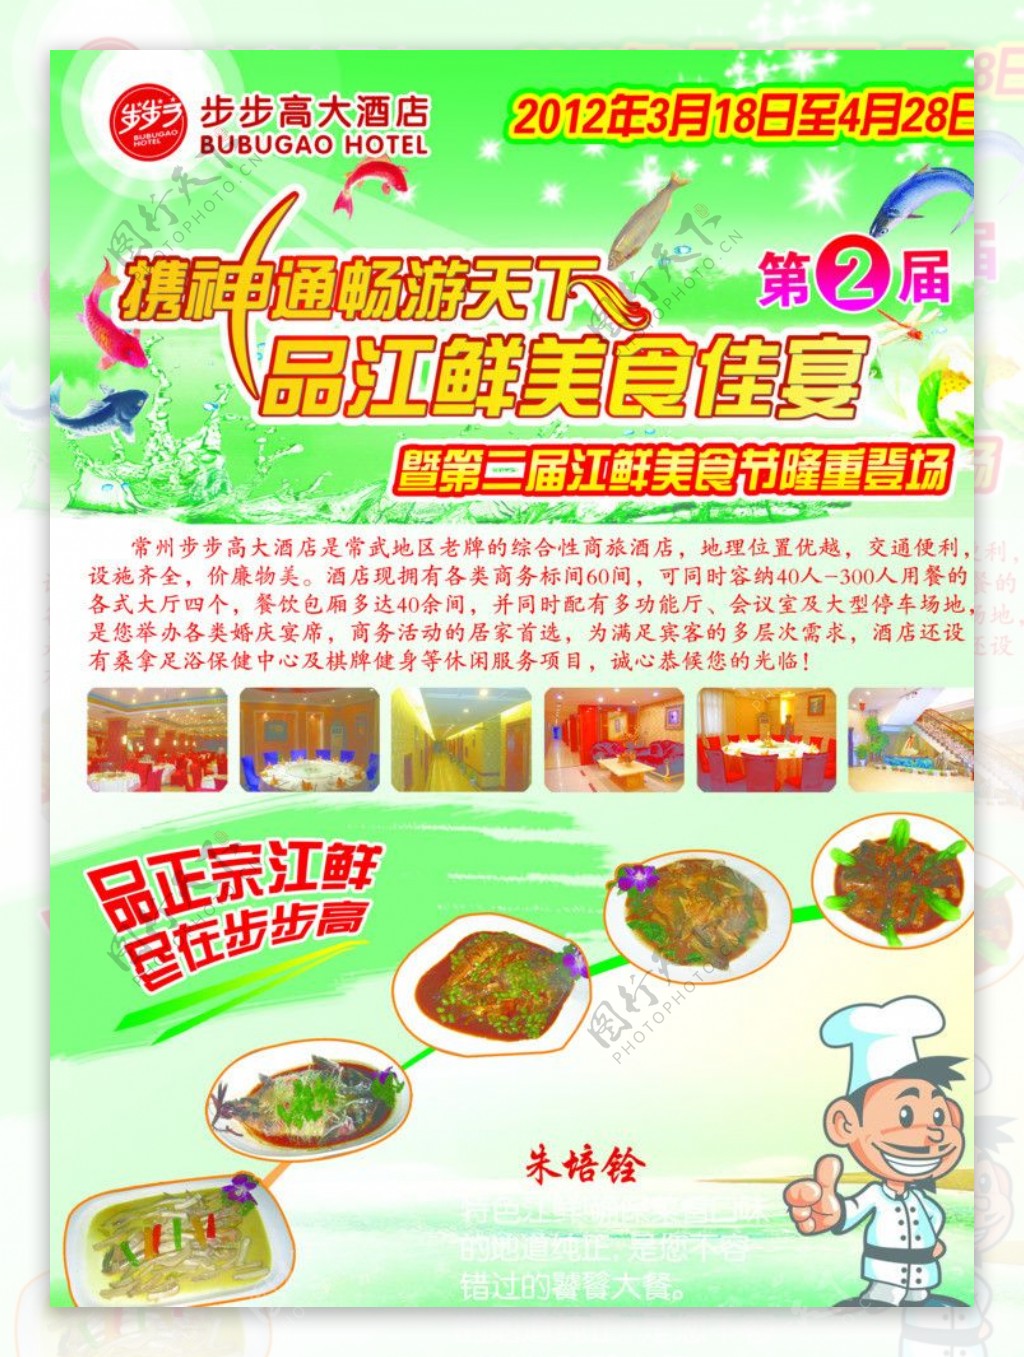 江鲜美食节单页图片